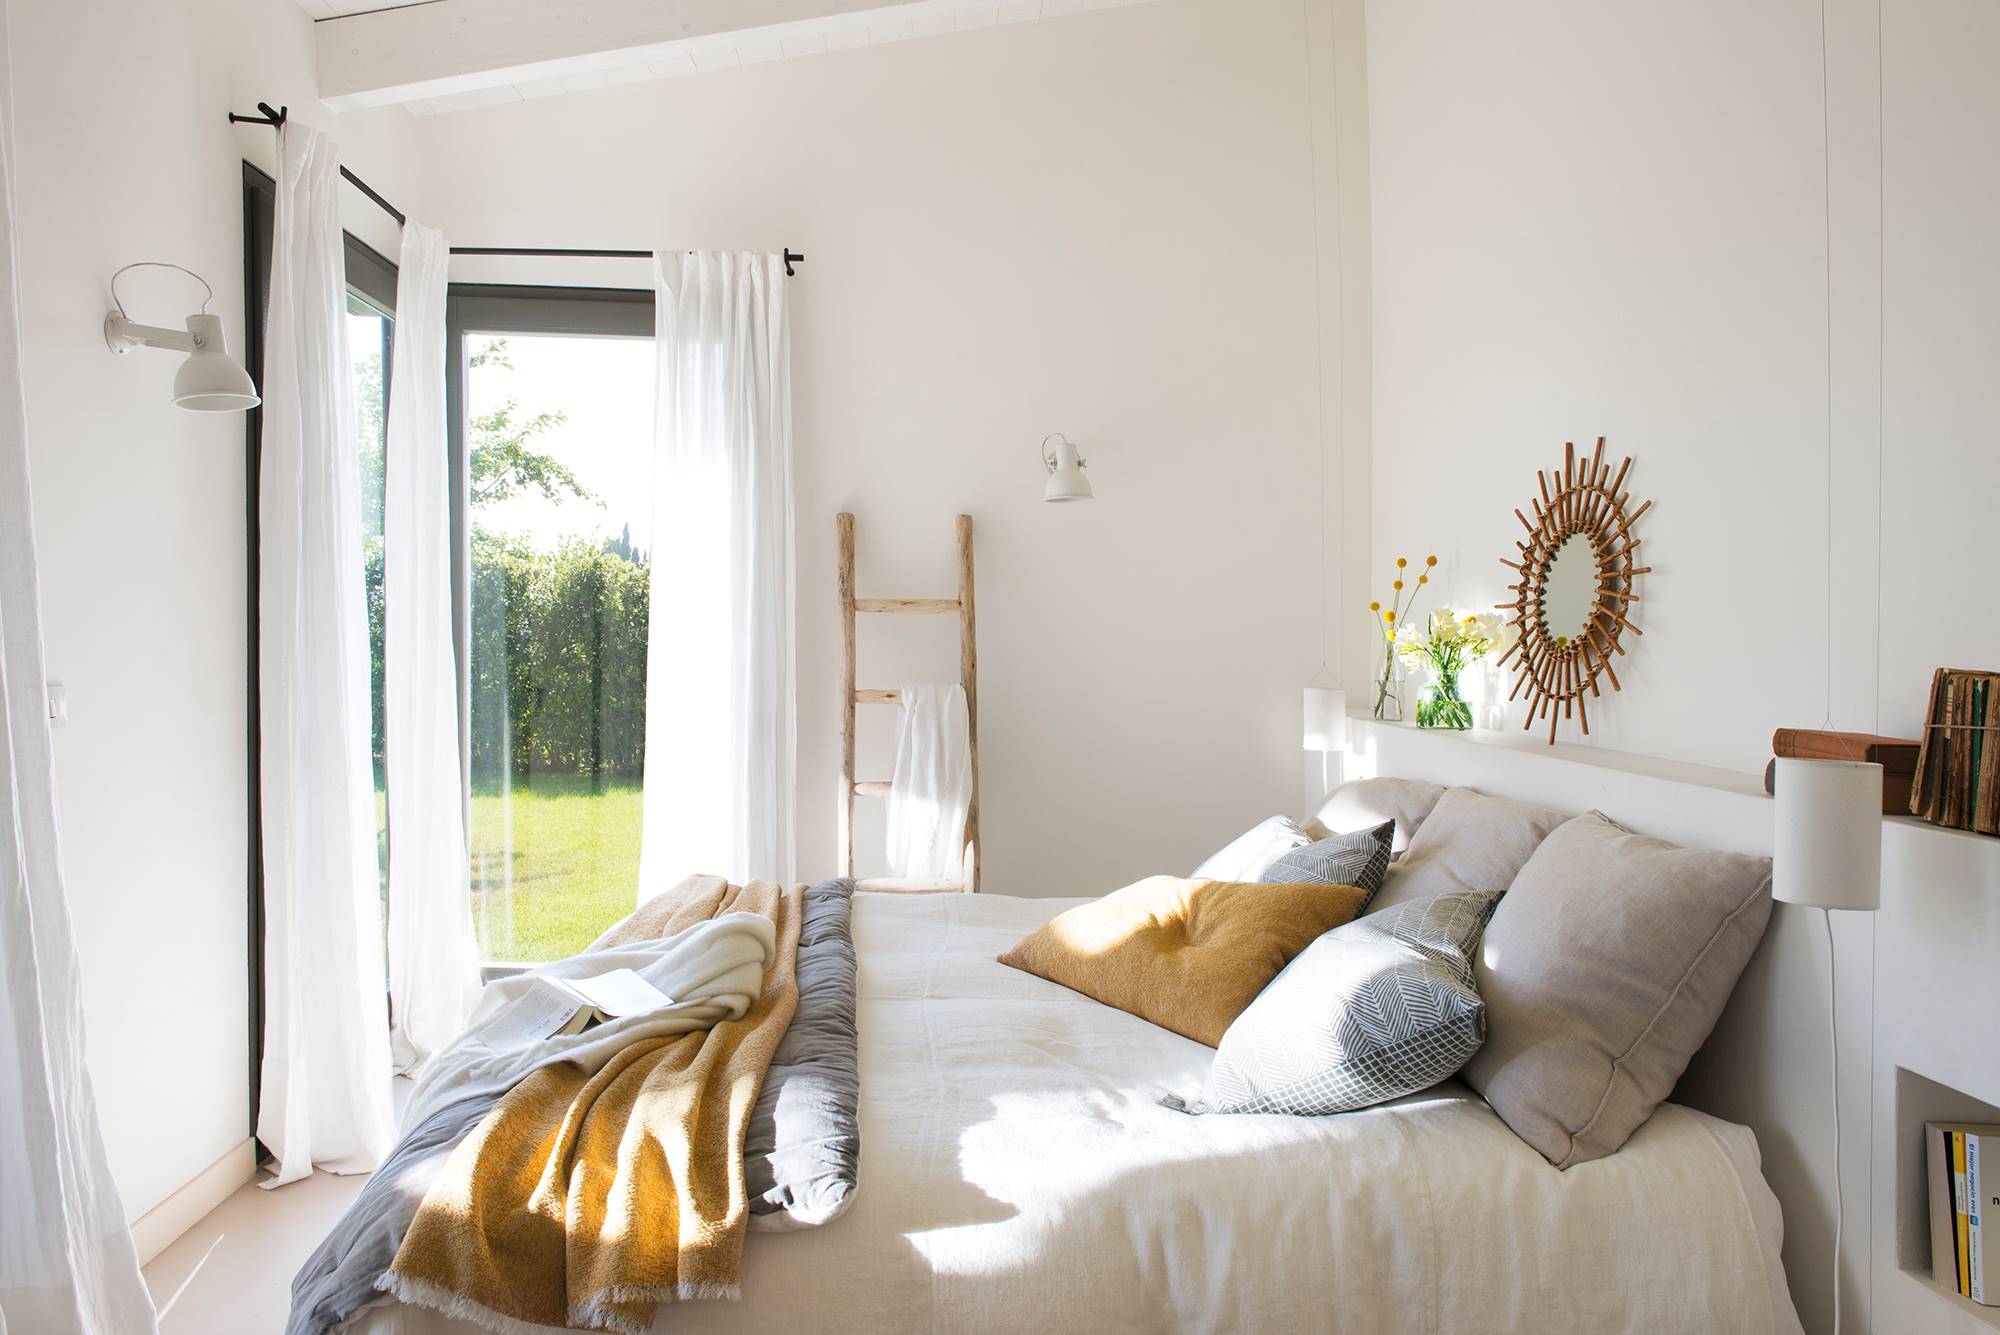 Dormitorio blanco con cabecero a medida y ropa de cama mostaza y gris